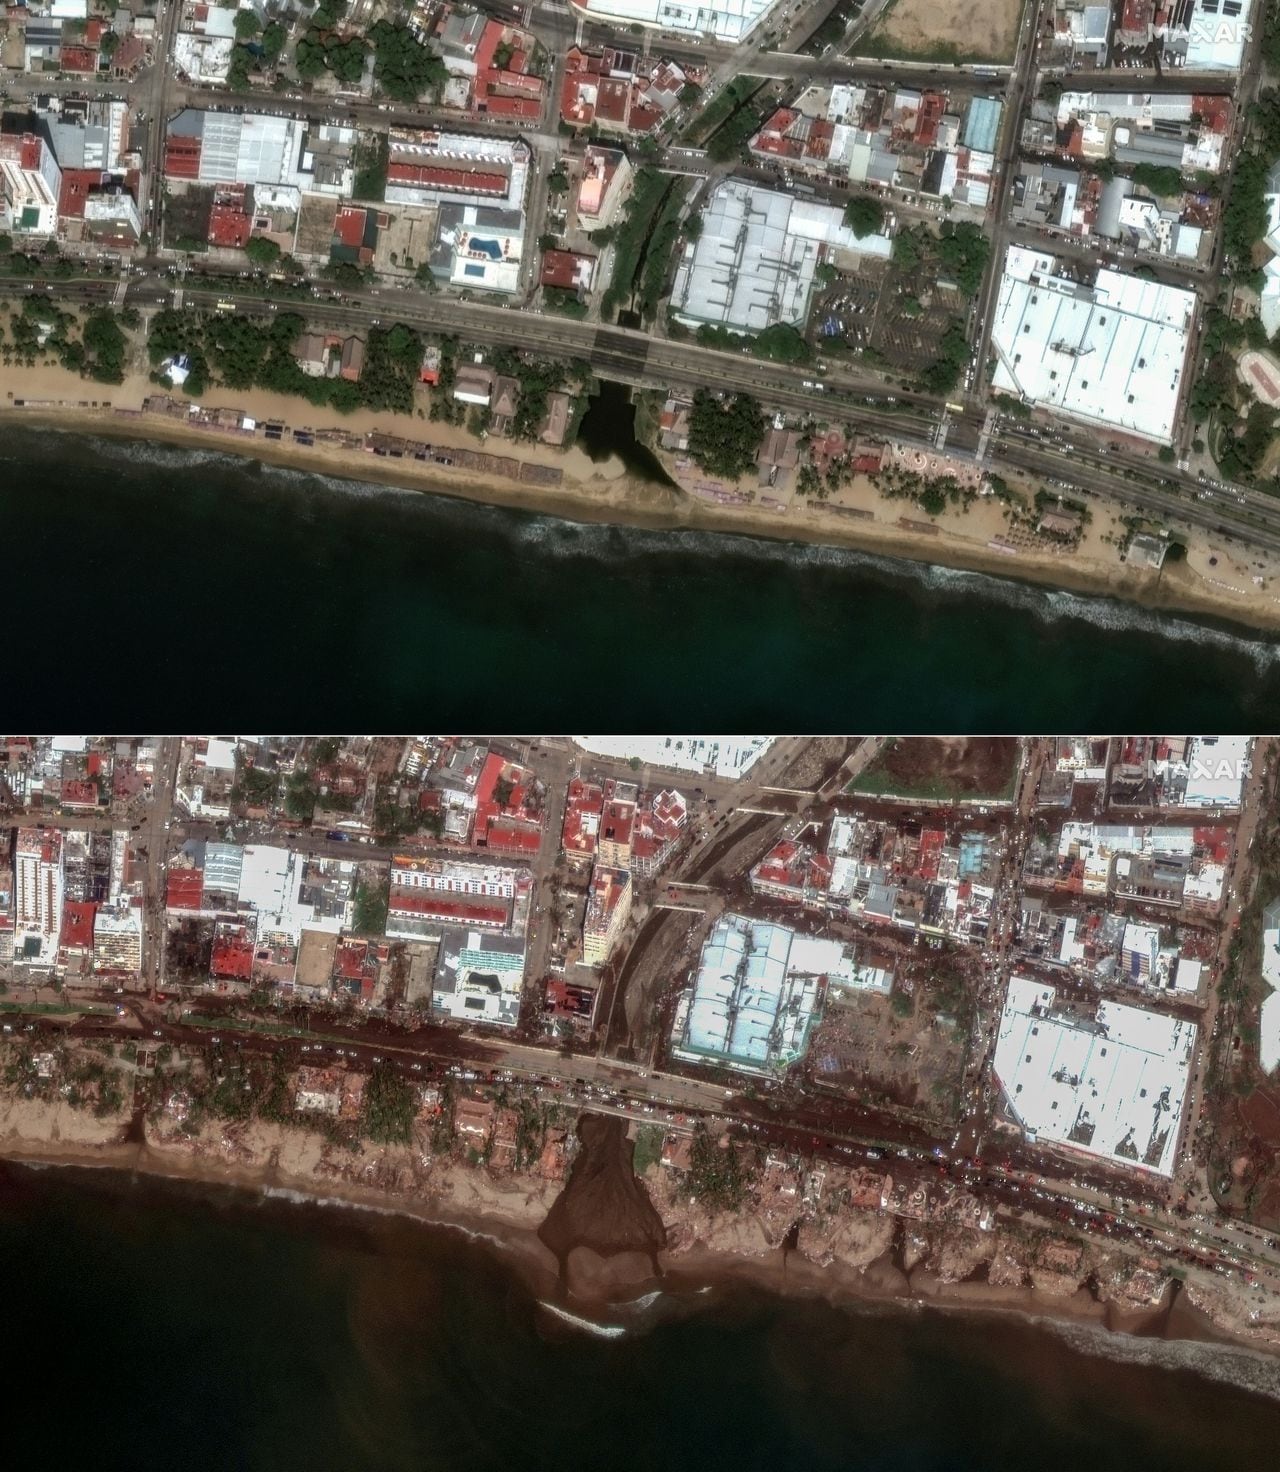 Esta combinación de imágenes creadas el 26 de octubre de 2023 muestra (arriba) esta imagen satelital cortesía de Maxar Technolgies que muestra el Estadio Arena GNP Seguros en Acapulco, estado de Guerrero, México, el 4 de octubre de 2023, antes del huracán Otis, y (abajo ) esta imagen satelital cortesía de Maxar Technolgies muestra el estadio Arena GNP Seguros en Acapulco, estado de Guerrero, México, el 26 de octubre de 2023, después del huracán Otis.